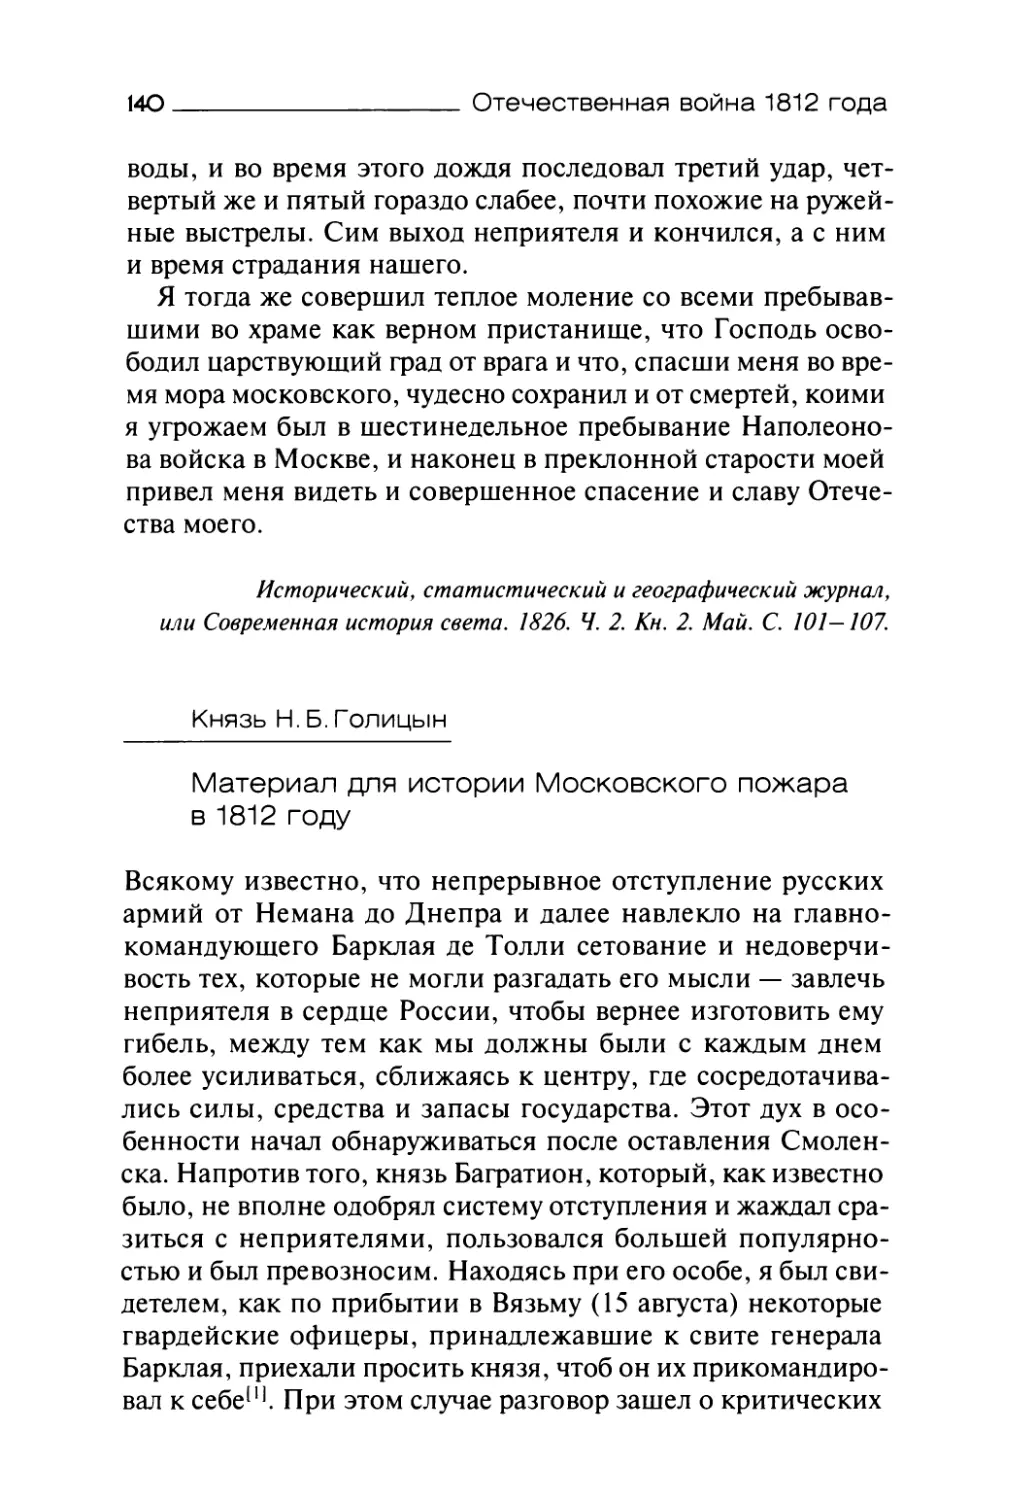 Князь Н.Б.Голицын. Материал для истории Московского пожара в 1812 году